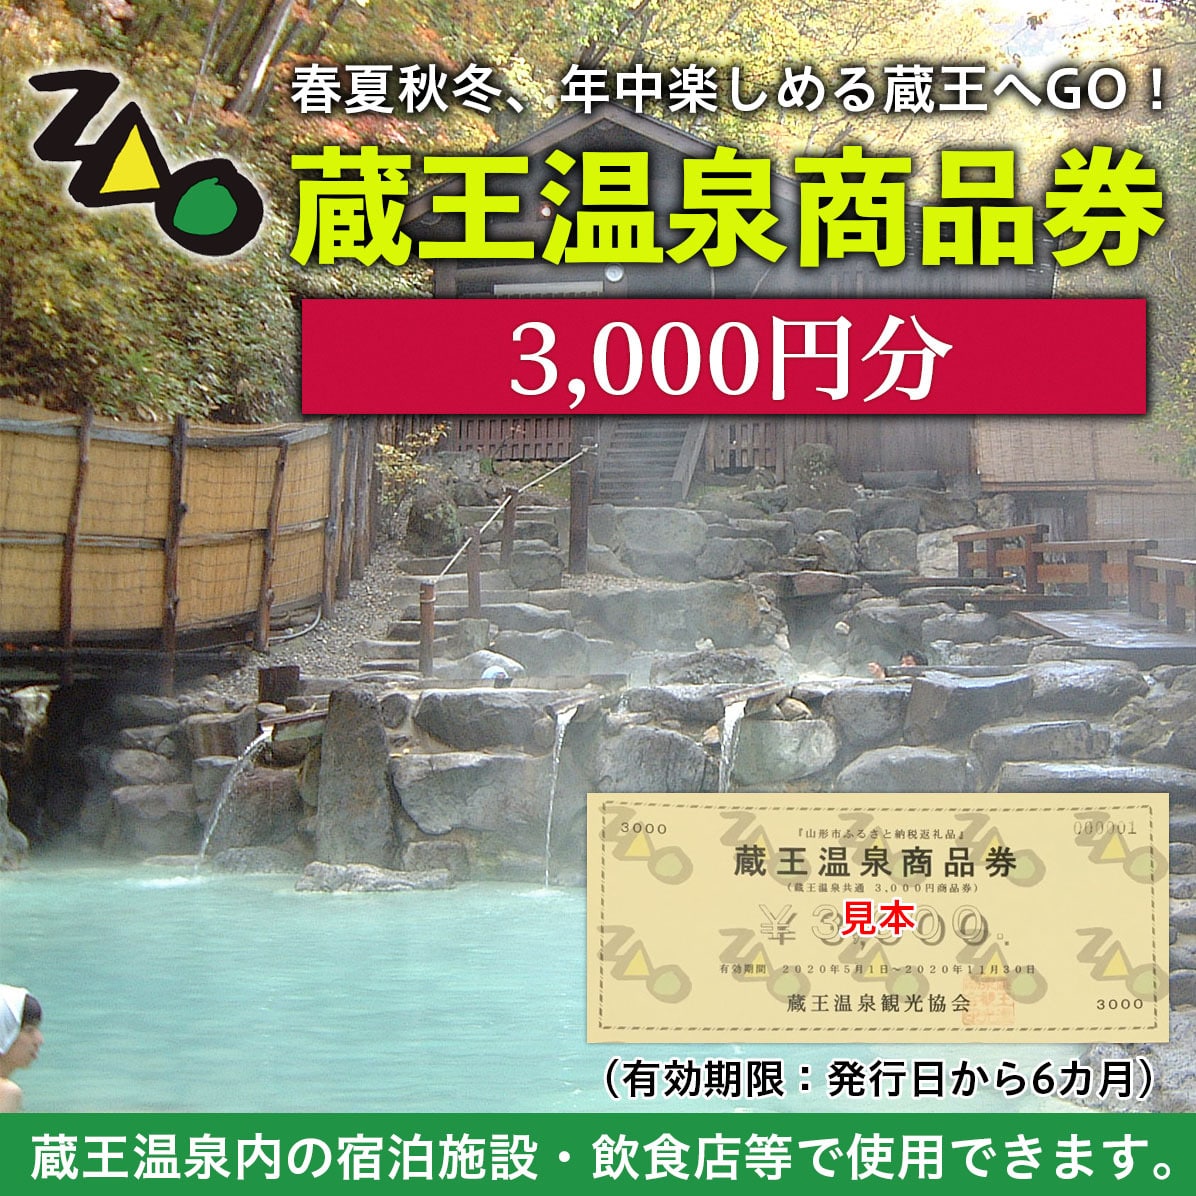 FY19-512 蔵王温泉商品券  3,000円分